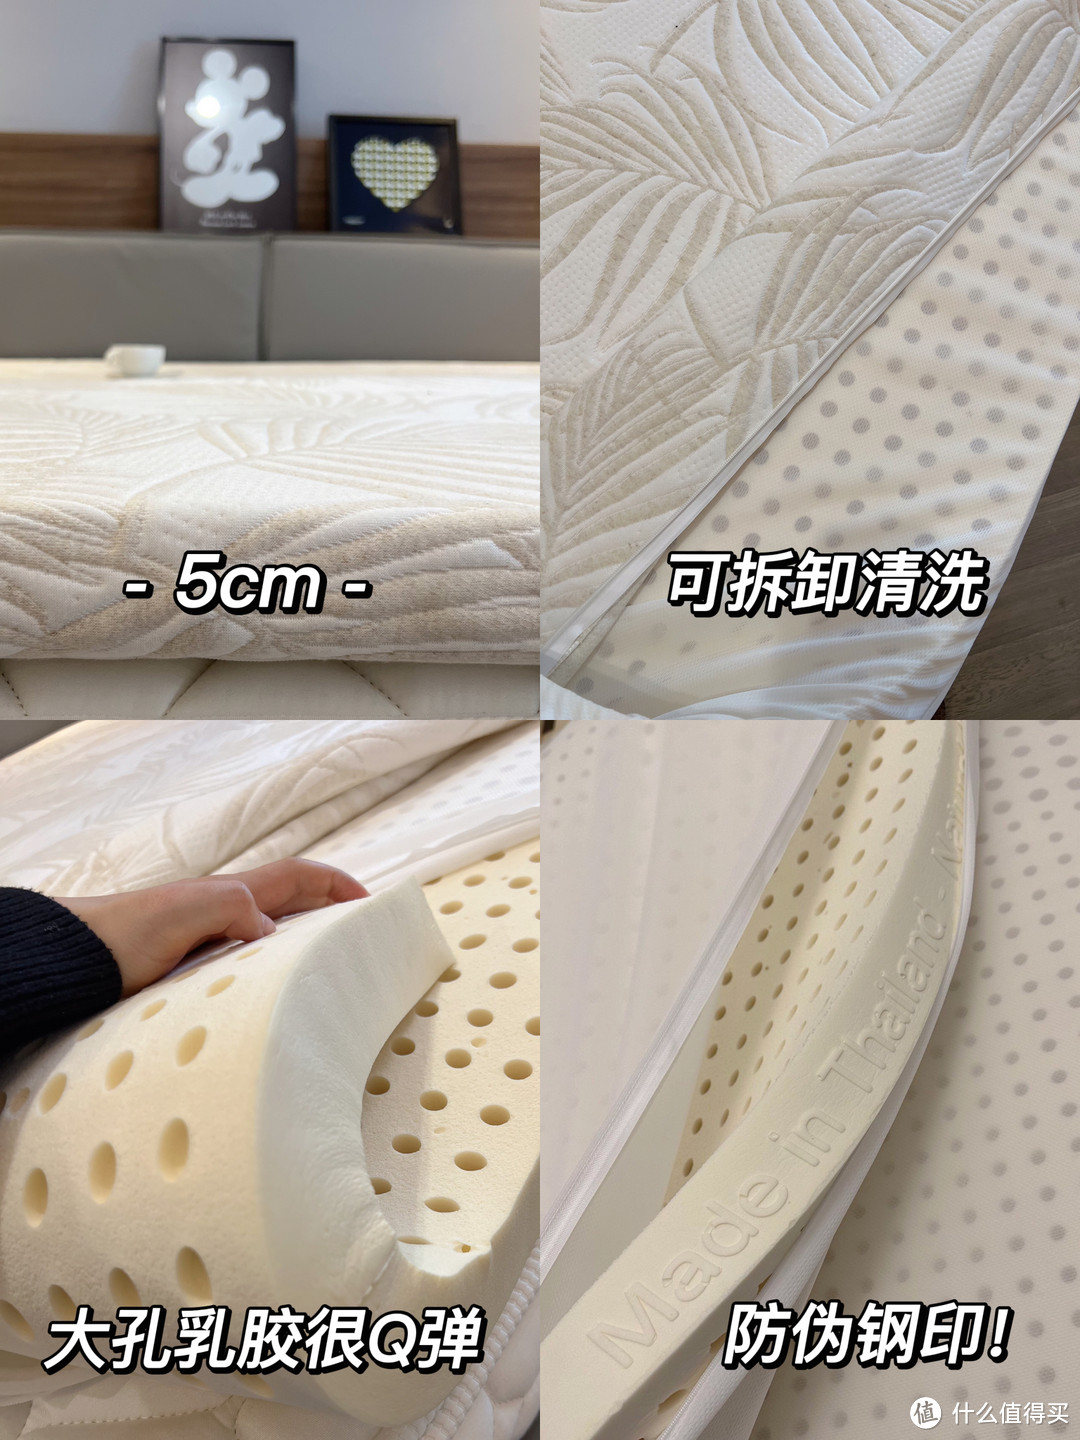 苏老伯泰国进口乳胶床垫 带有钢印才是真乳胶